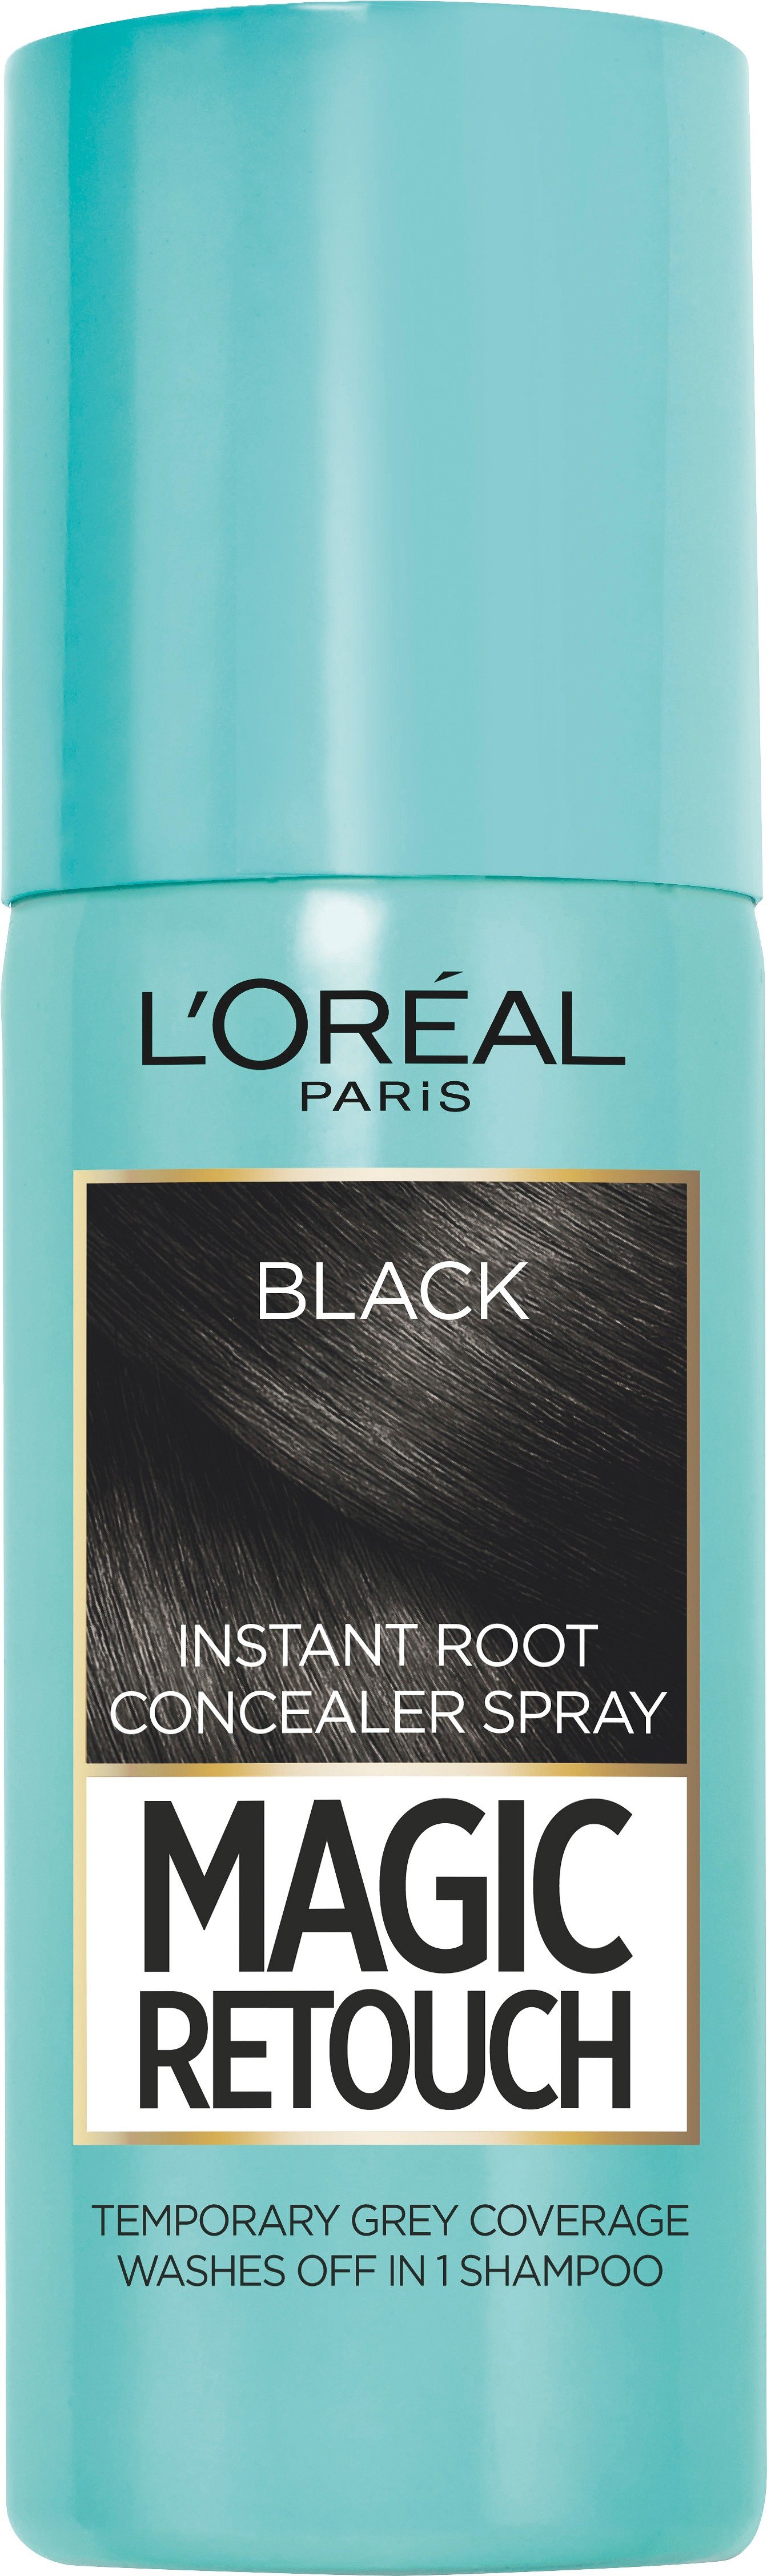 L'Oréal Paris Magic Retouch Concealer Spray Black 75 ml